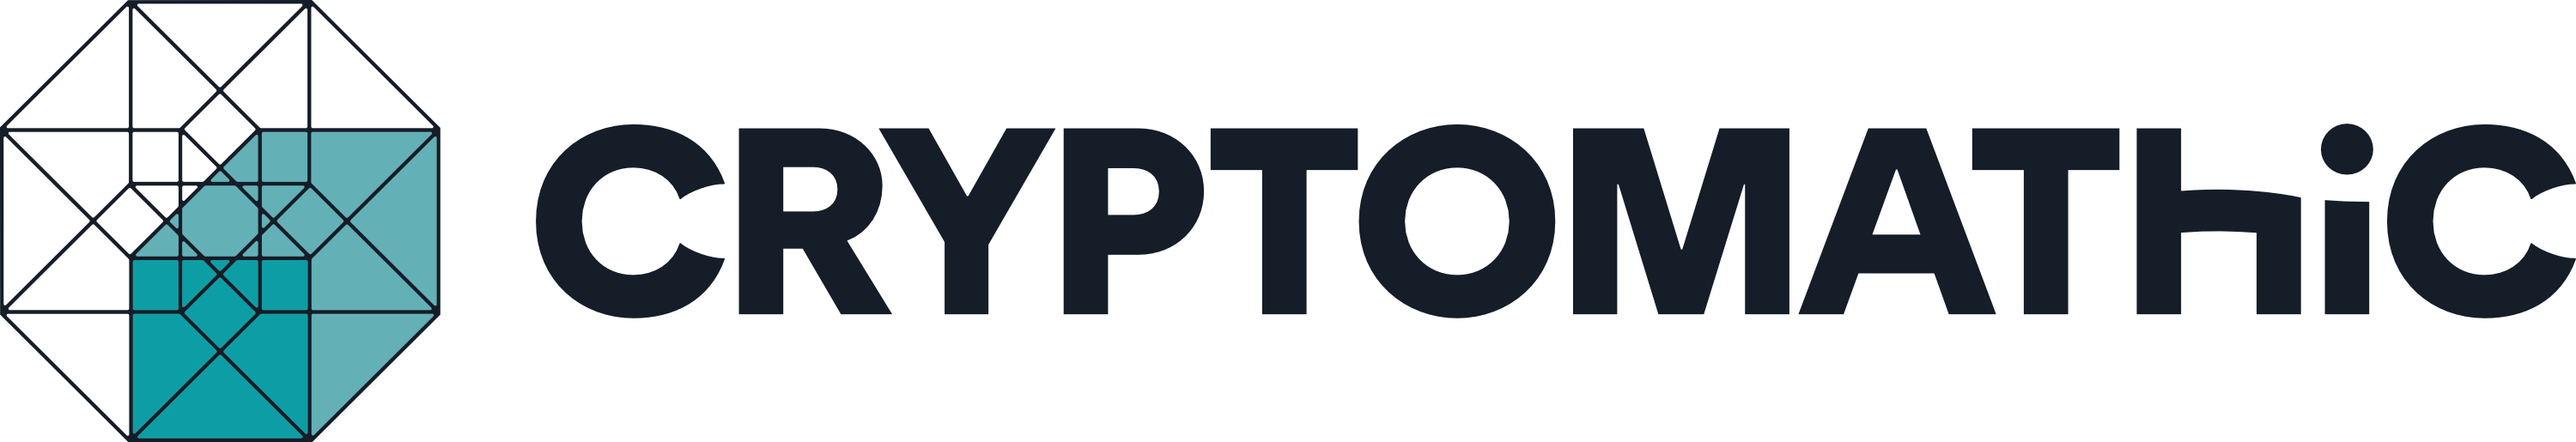 Logo Cryptomathic